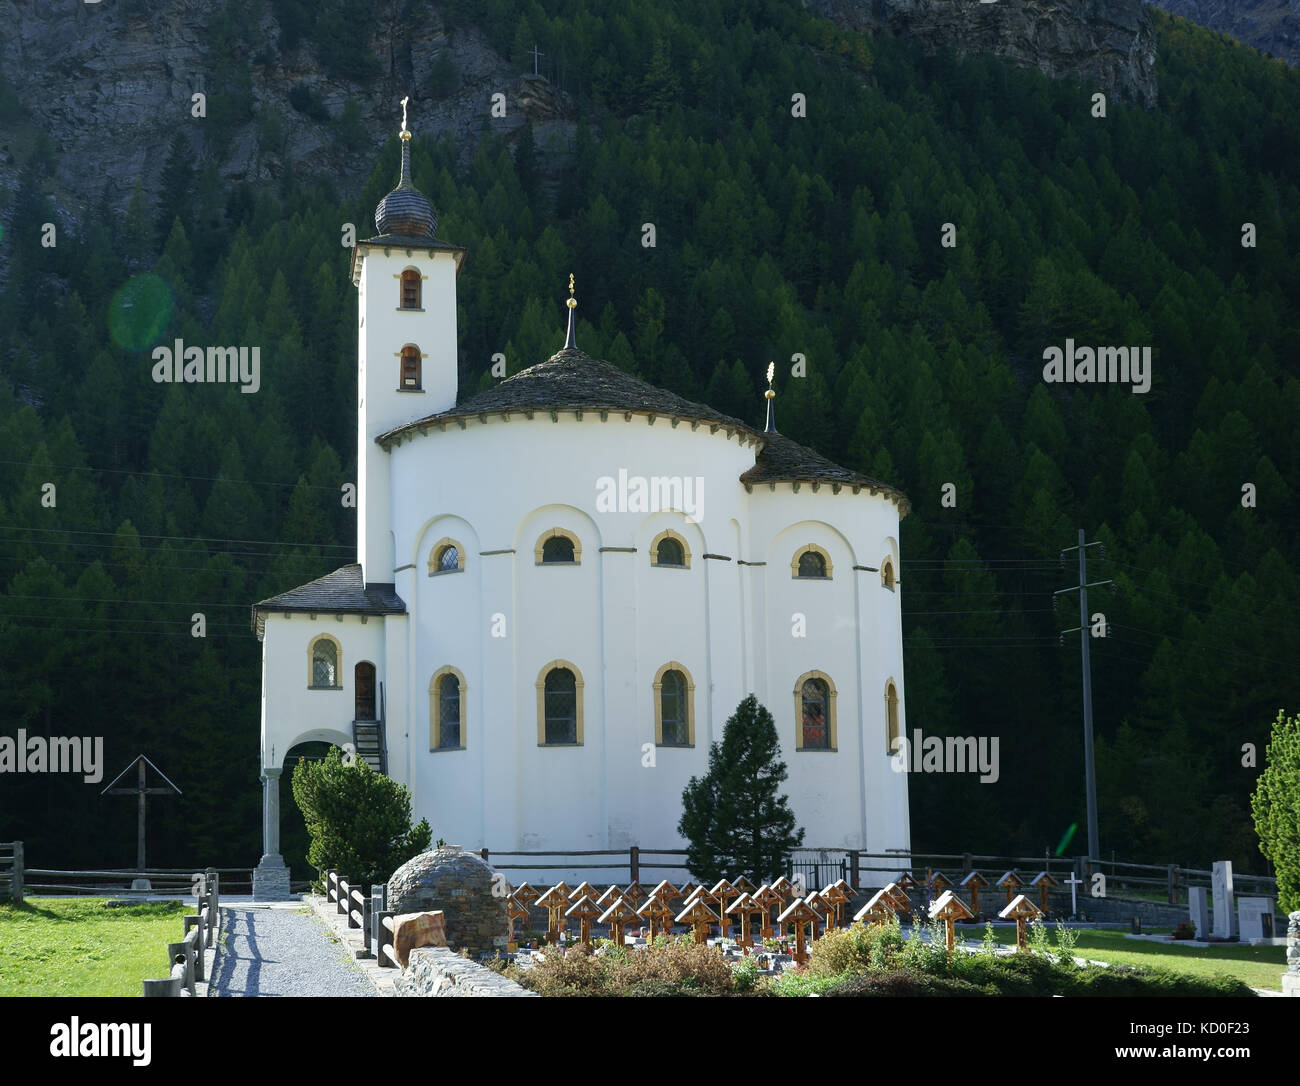 Baroque Rundkirche at Saas Balen, Saas valley, Valais, Switzerland Stock Photo